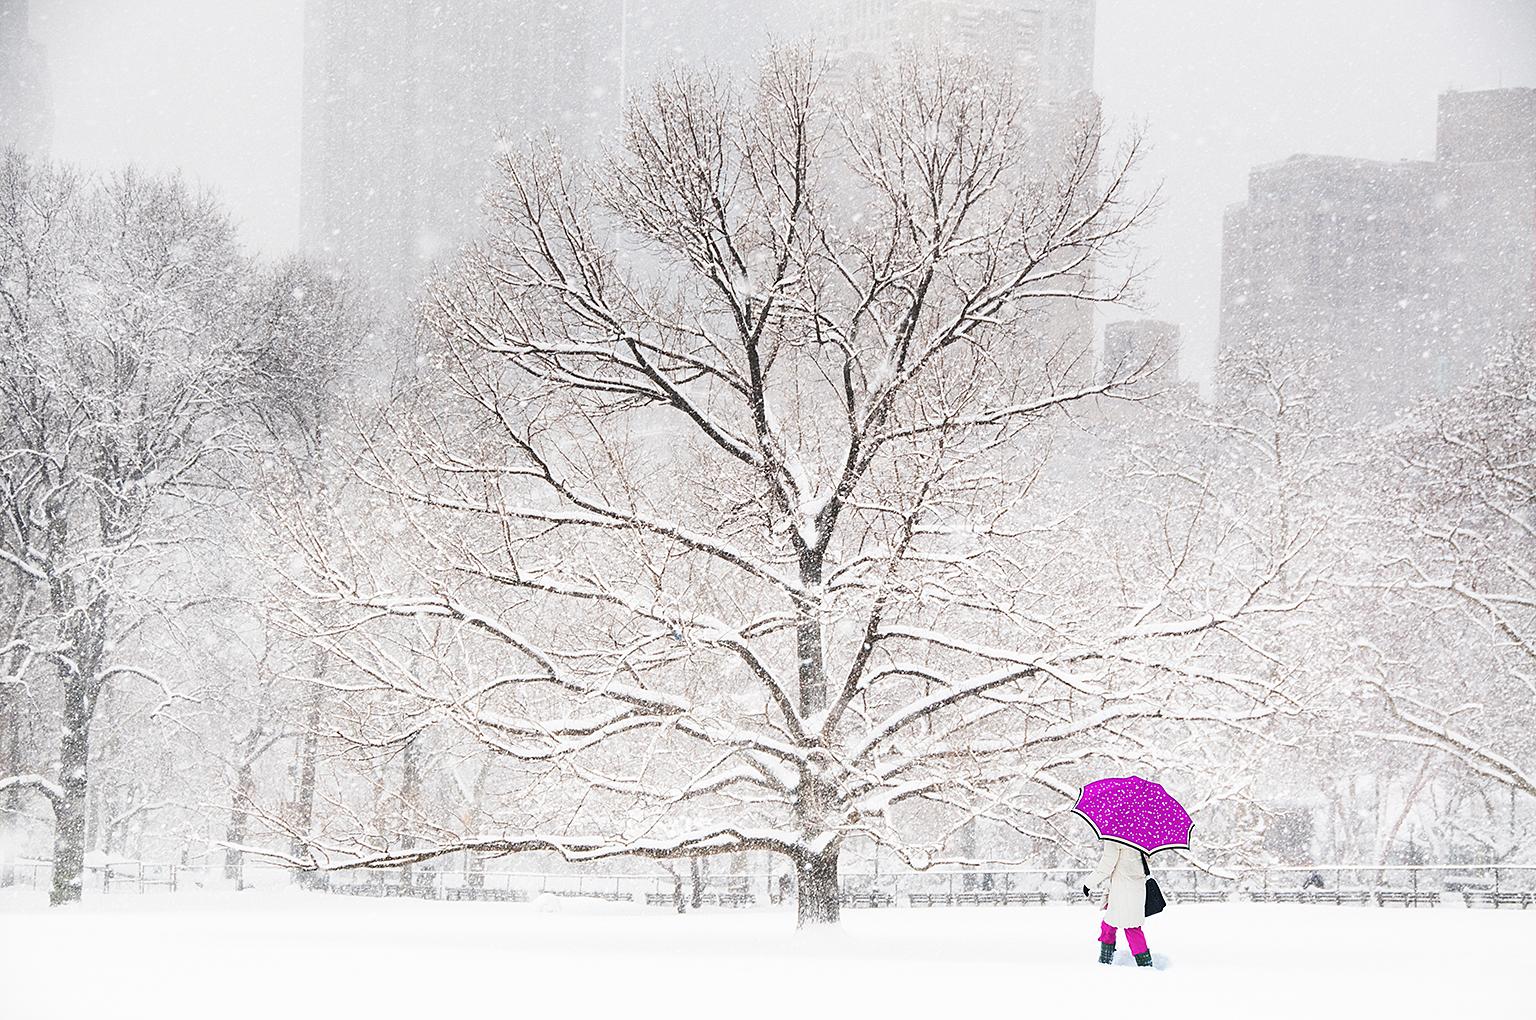 Landscape Photograph Mitchell Funk - Central Park : Parapluie dans la neige